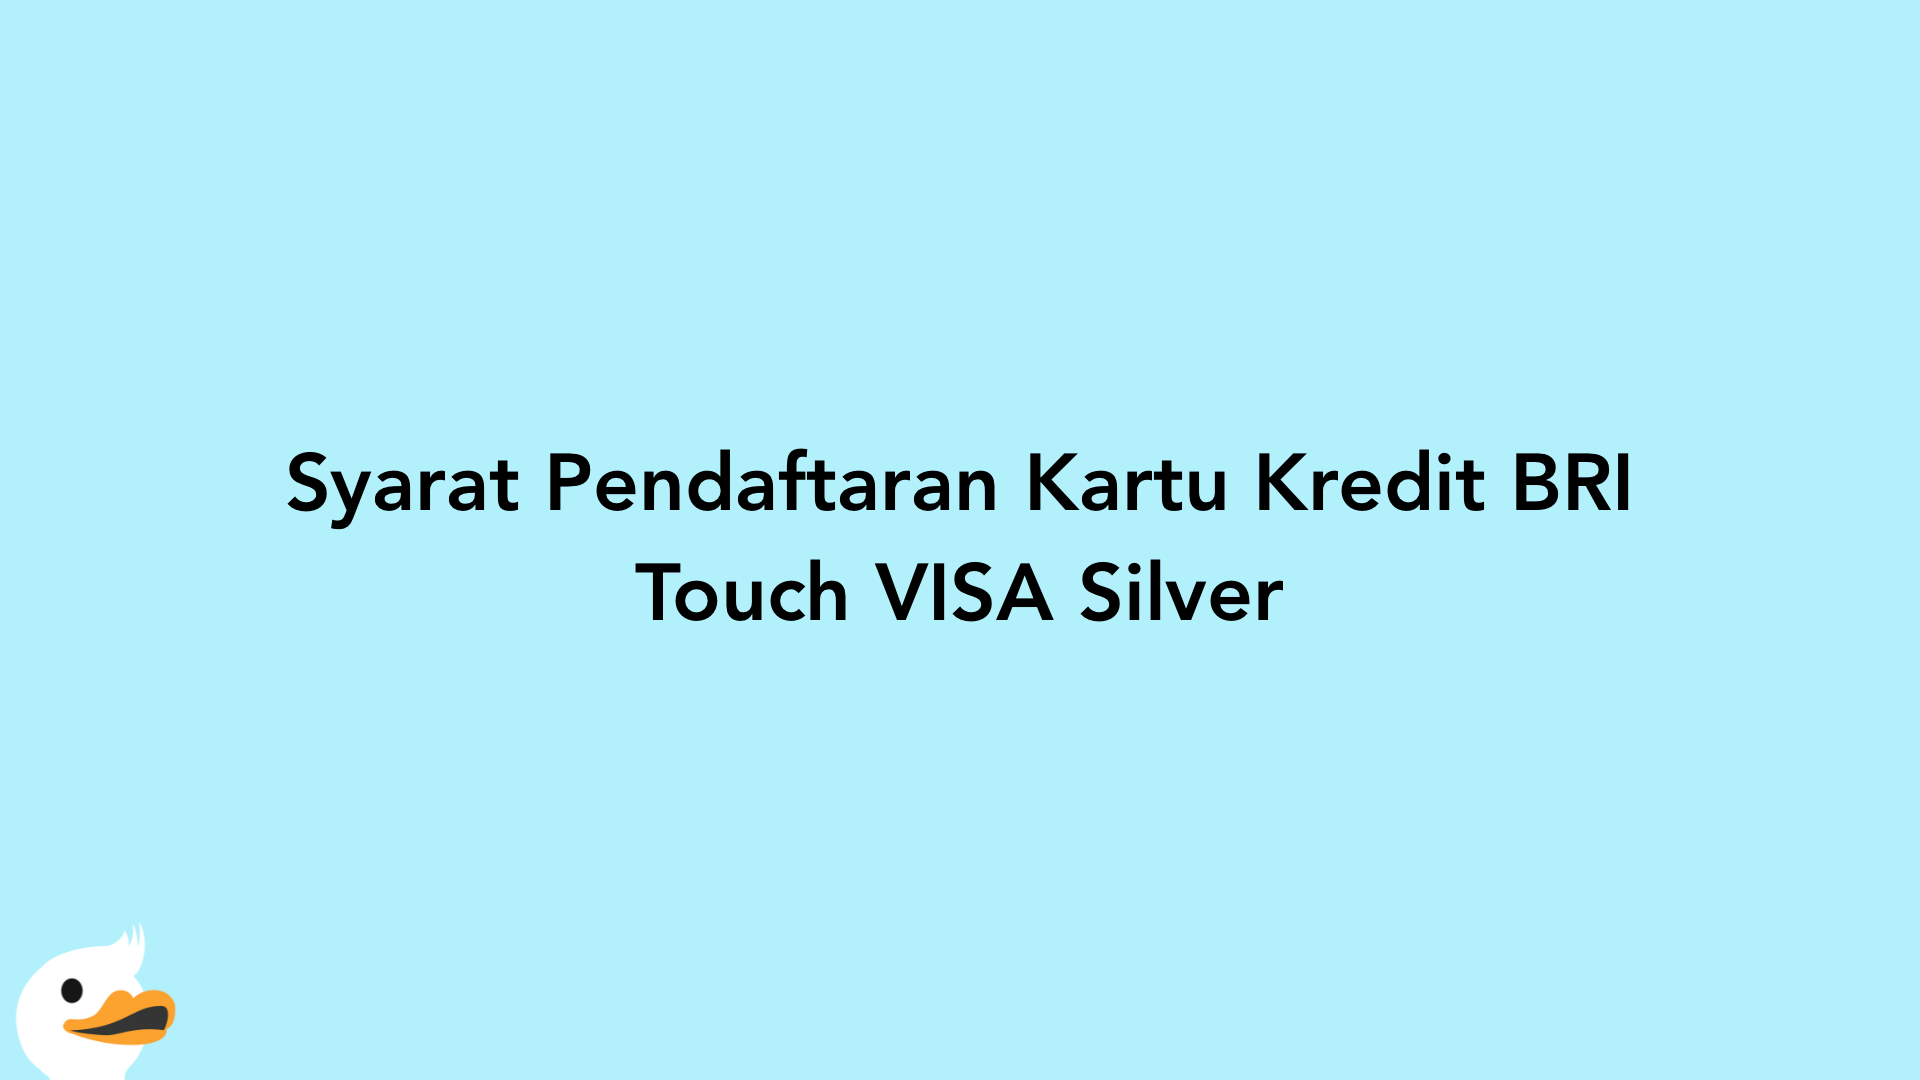 Syarat Pendaftaran Kartu Kredit BRI Touch VISA Silver